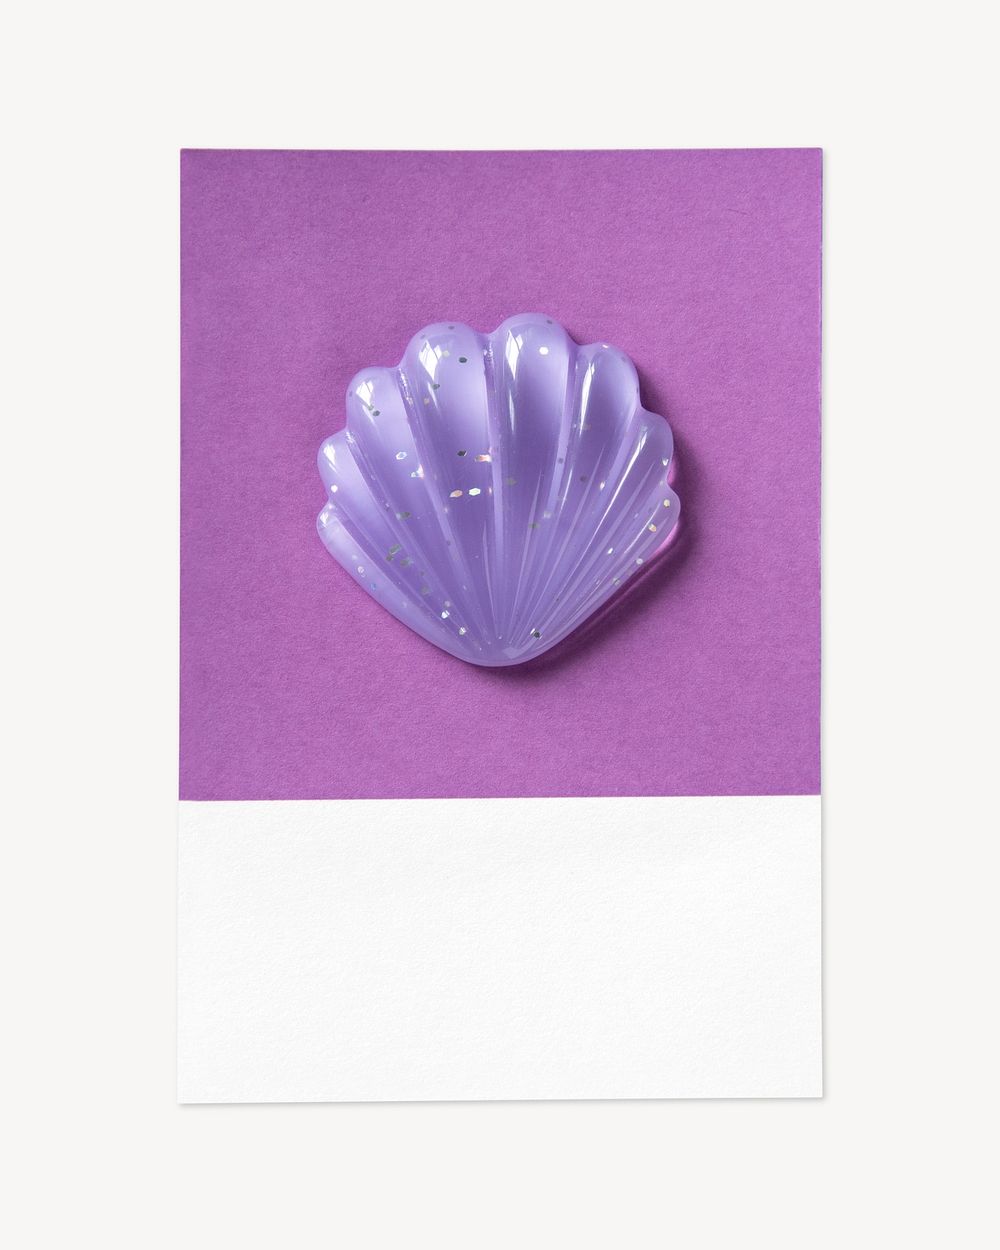 3D seashell illustration, purple shape